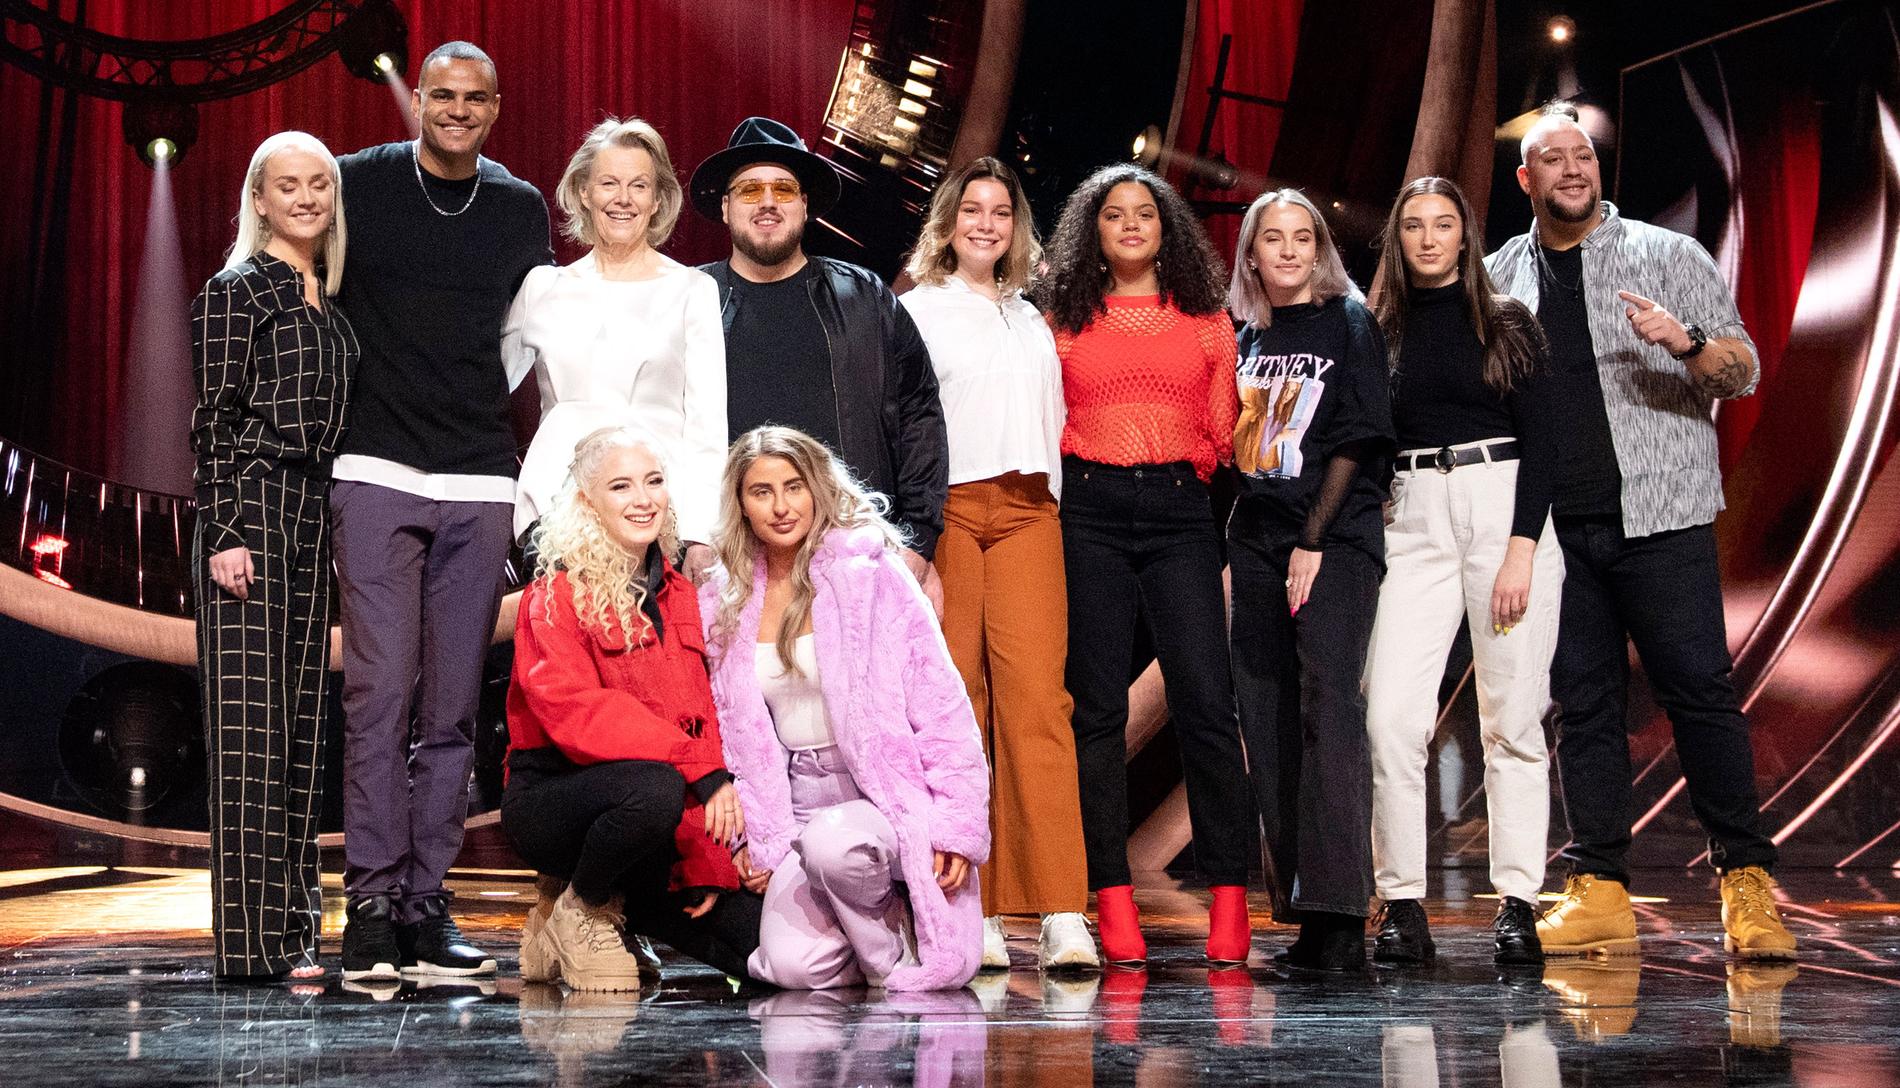 Artisterna Anna Bergendahl, Mohombi, Arja Saijonmaa, Anis Don Demina, High 15, Nano ocg Wictoria deltar i den första deltävlingen av Melodifestivalen 2019.